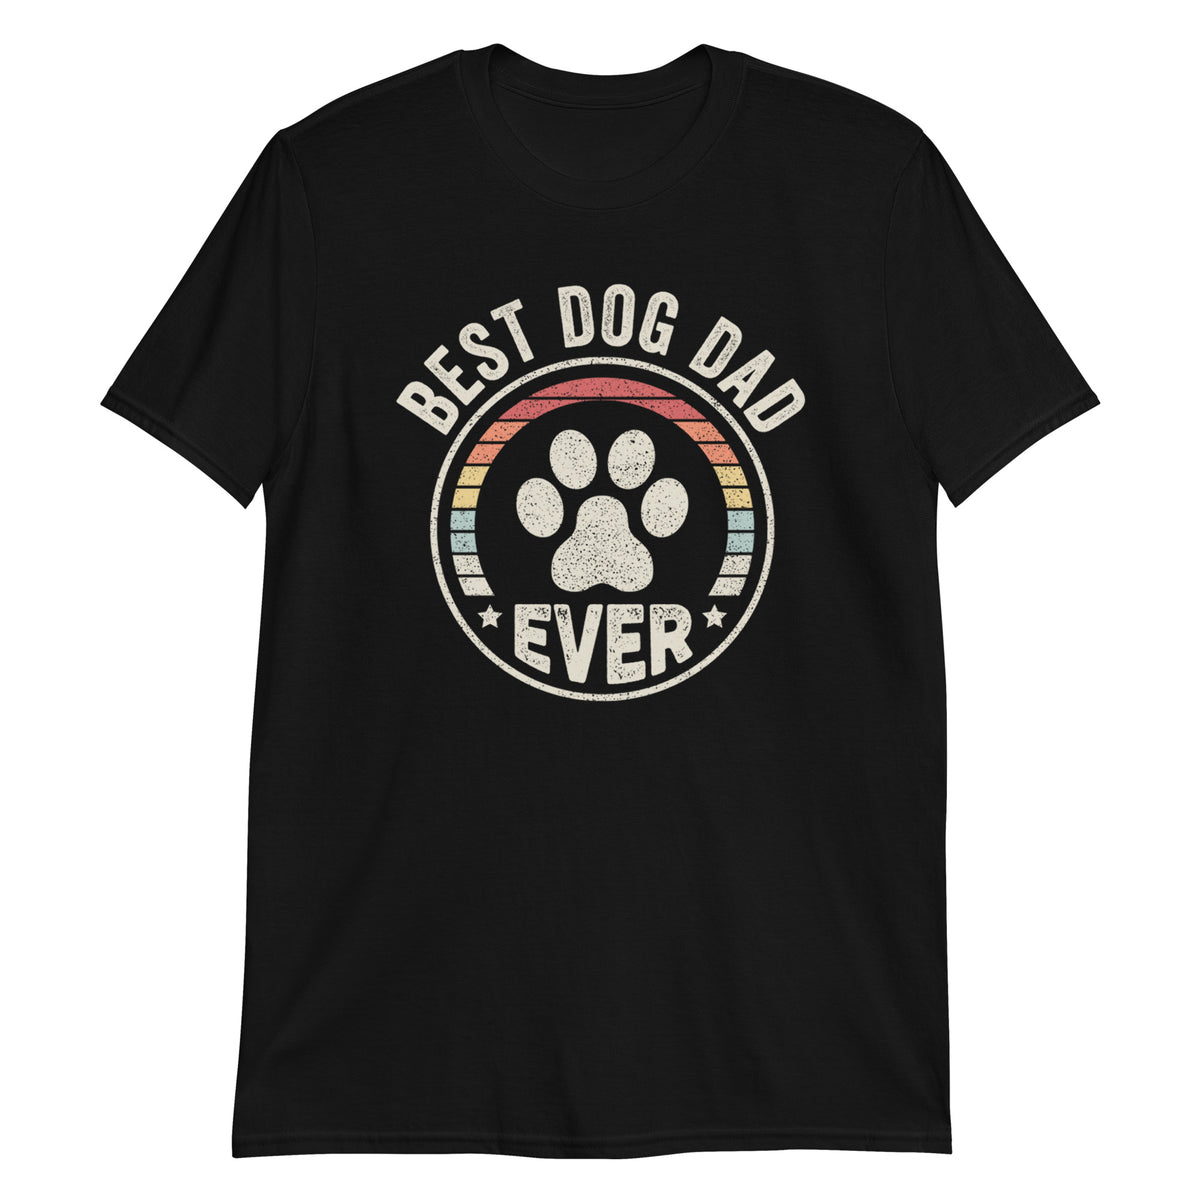 Best Dog Dad Ever Sunset Retro Vintage Funny T-Shirt